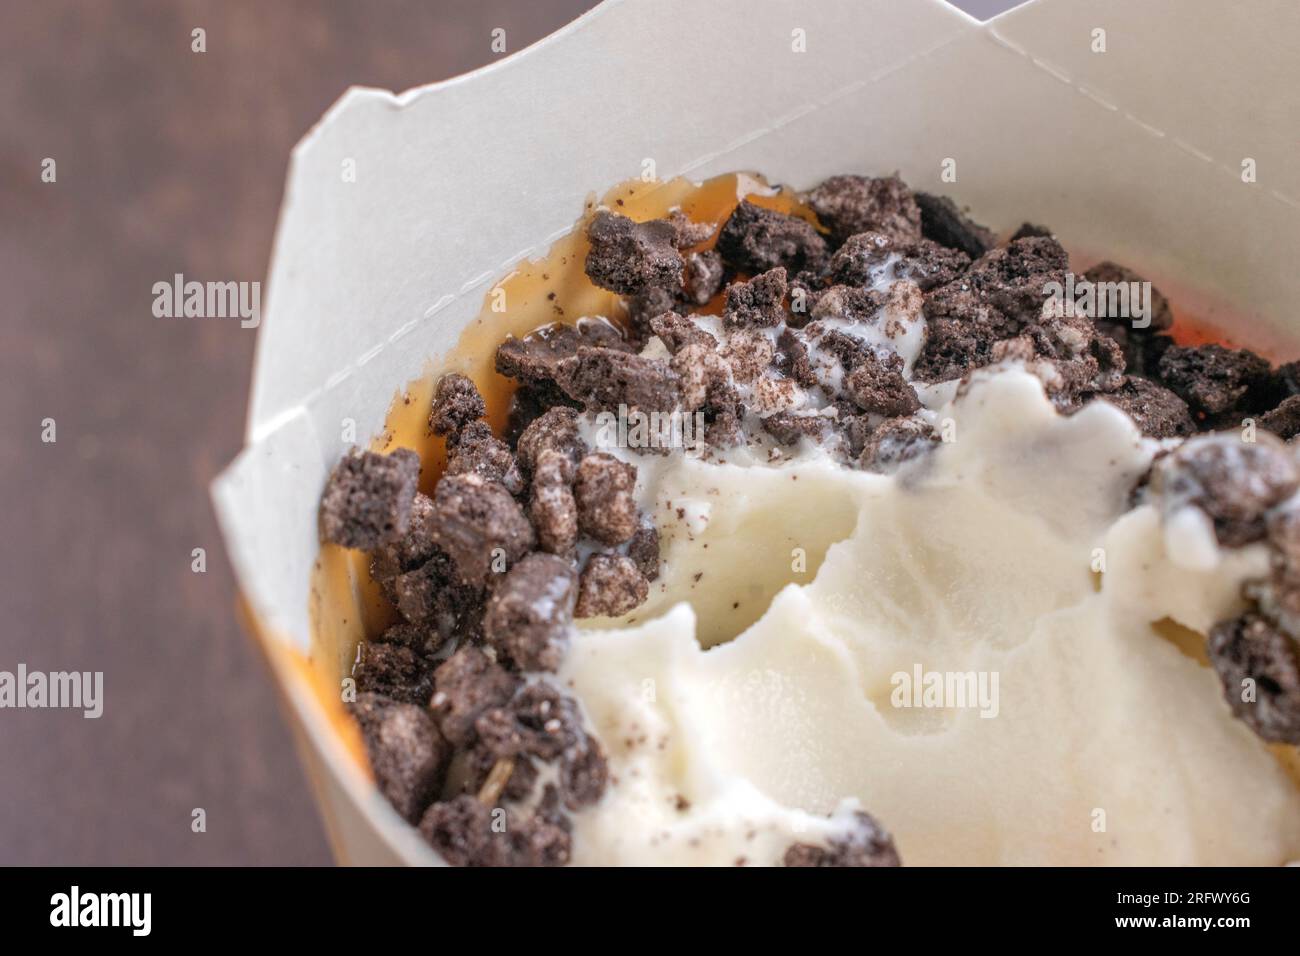 Gelato alla vaniglia: La combinazione di gelato alla vaniglia dolce, caramello salato e patatine croccanti è semplicemente irresistibile. Foto Stock